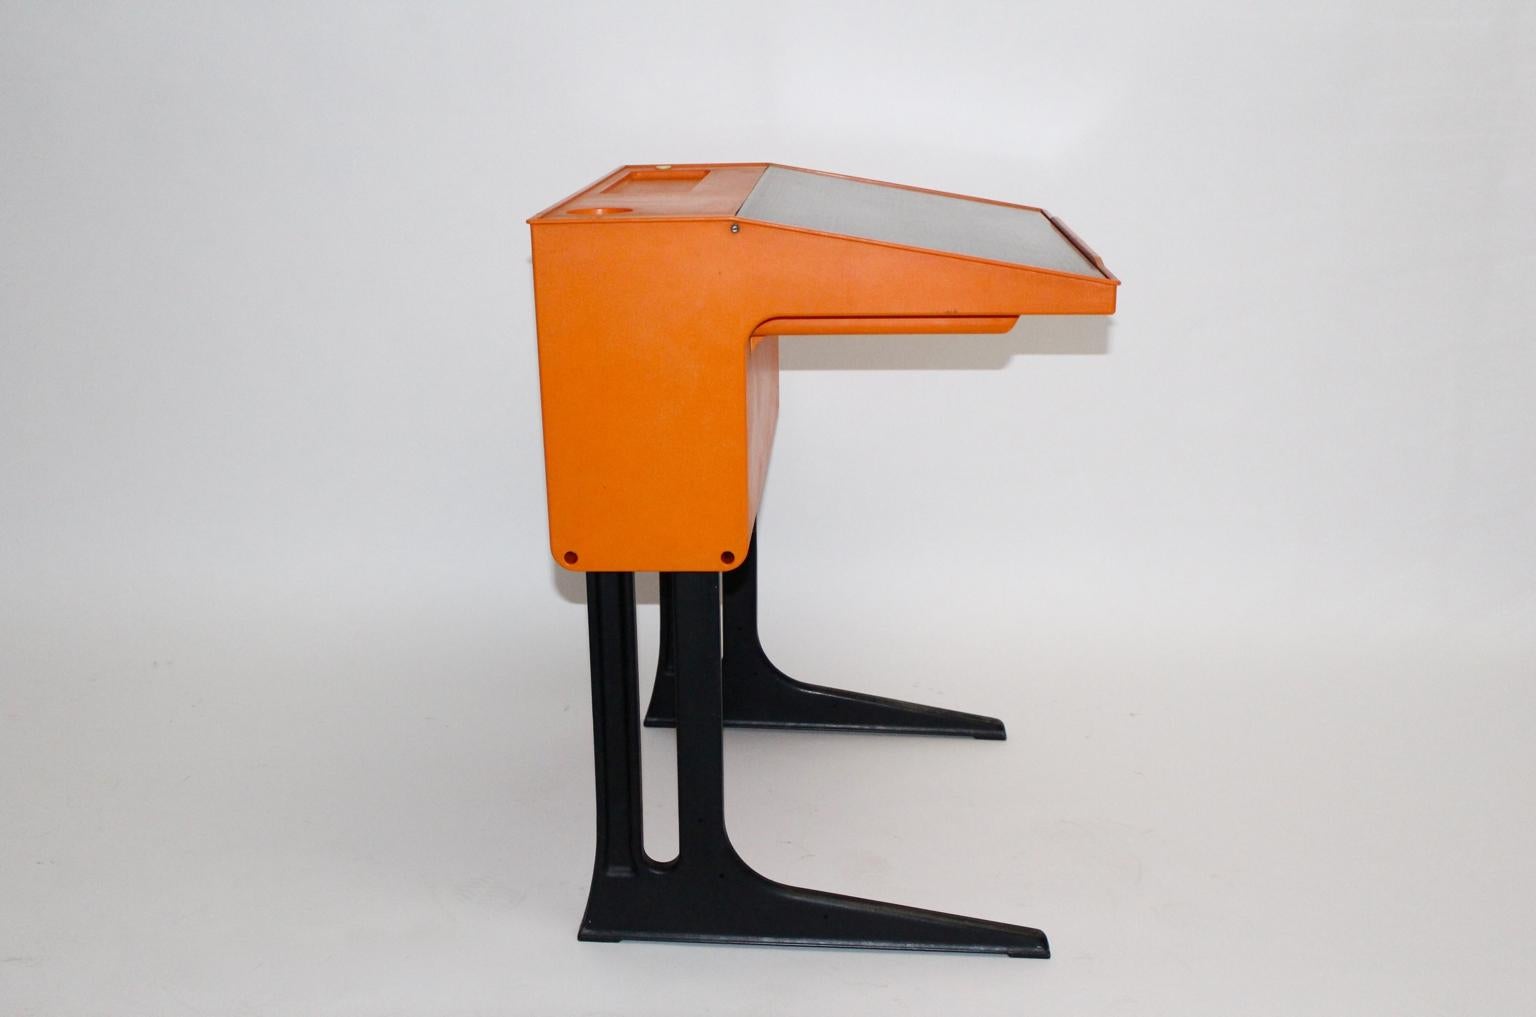 Space Age orangefarbener Vintage-Schreibtisch, entworfen von Luigi Colani für Flötotto, Deutschland, um 1970.
Während der Korpus einen kräftigen Orangeton aufweist, ist die Schreibklappe braun.
Der Schreibtisch kann sowohl für Kinder als auch für